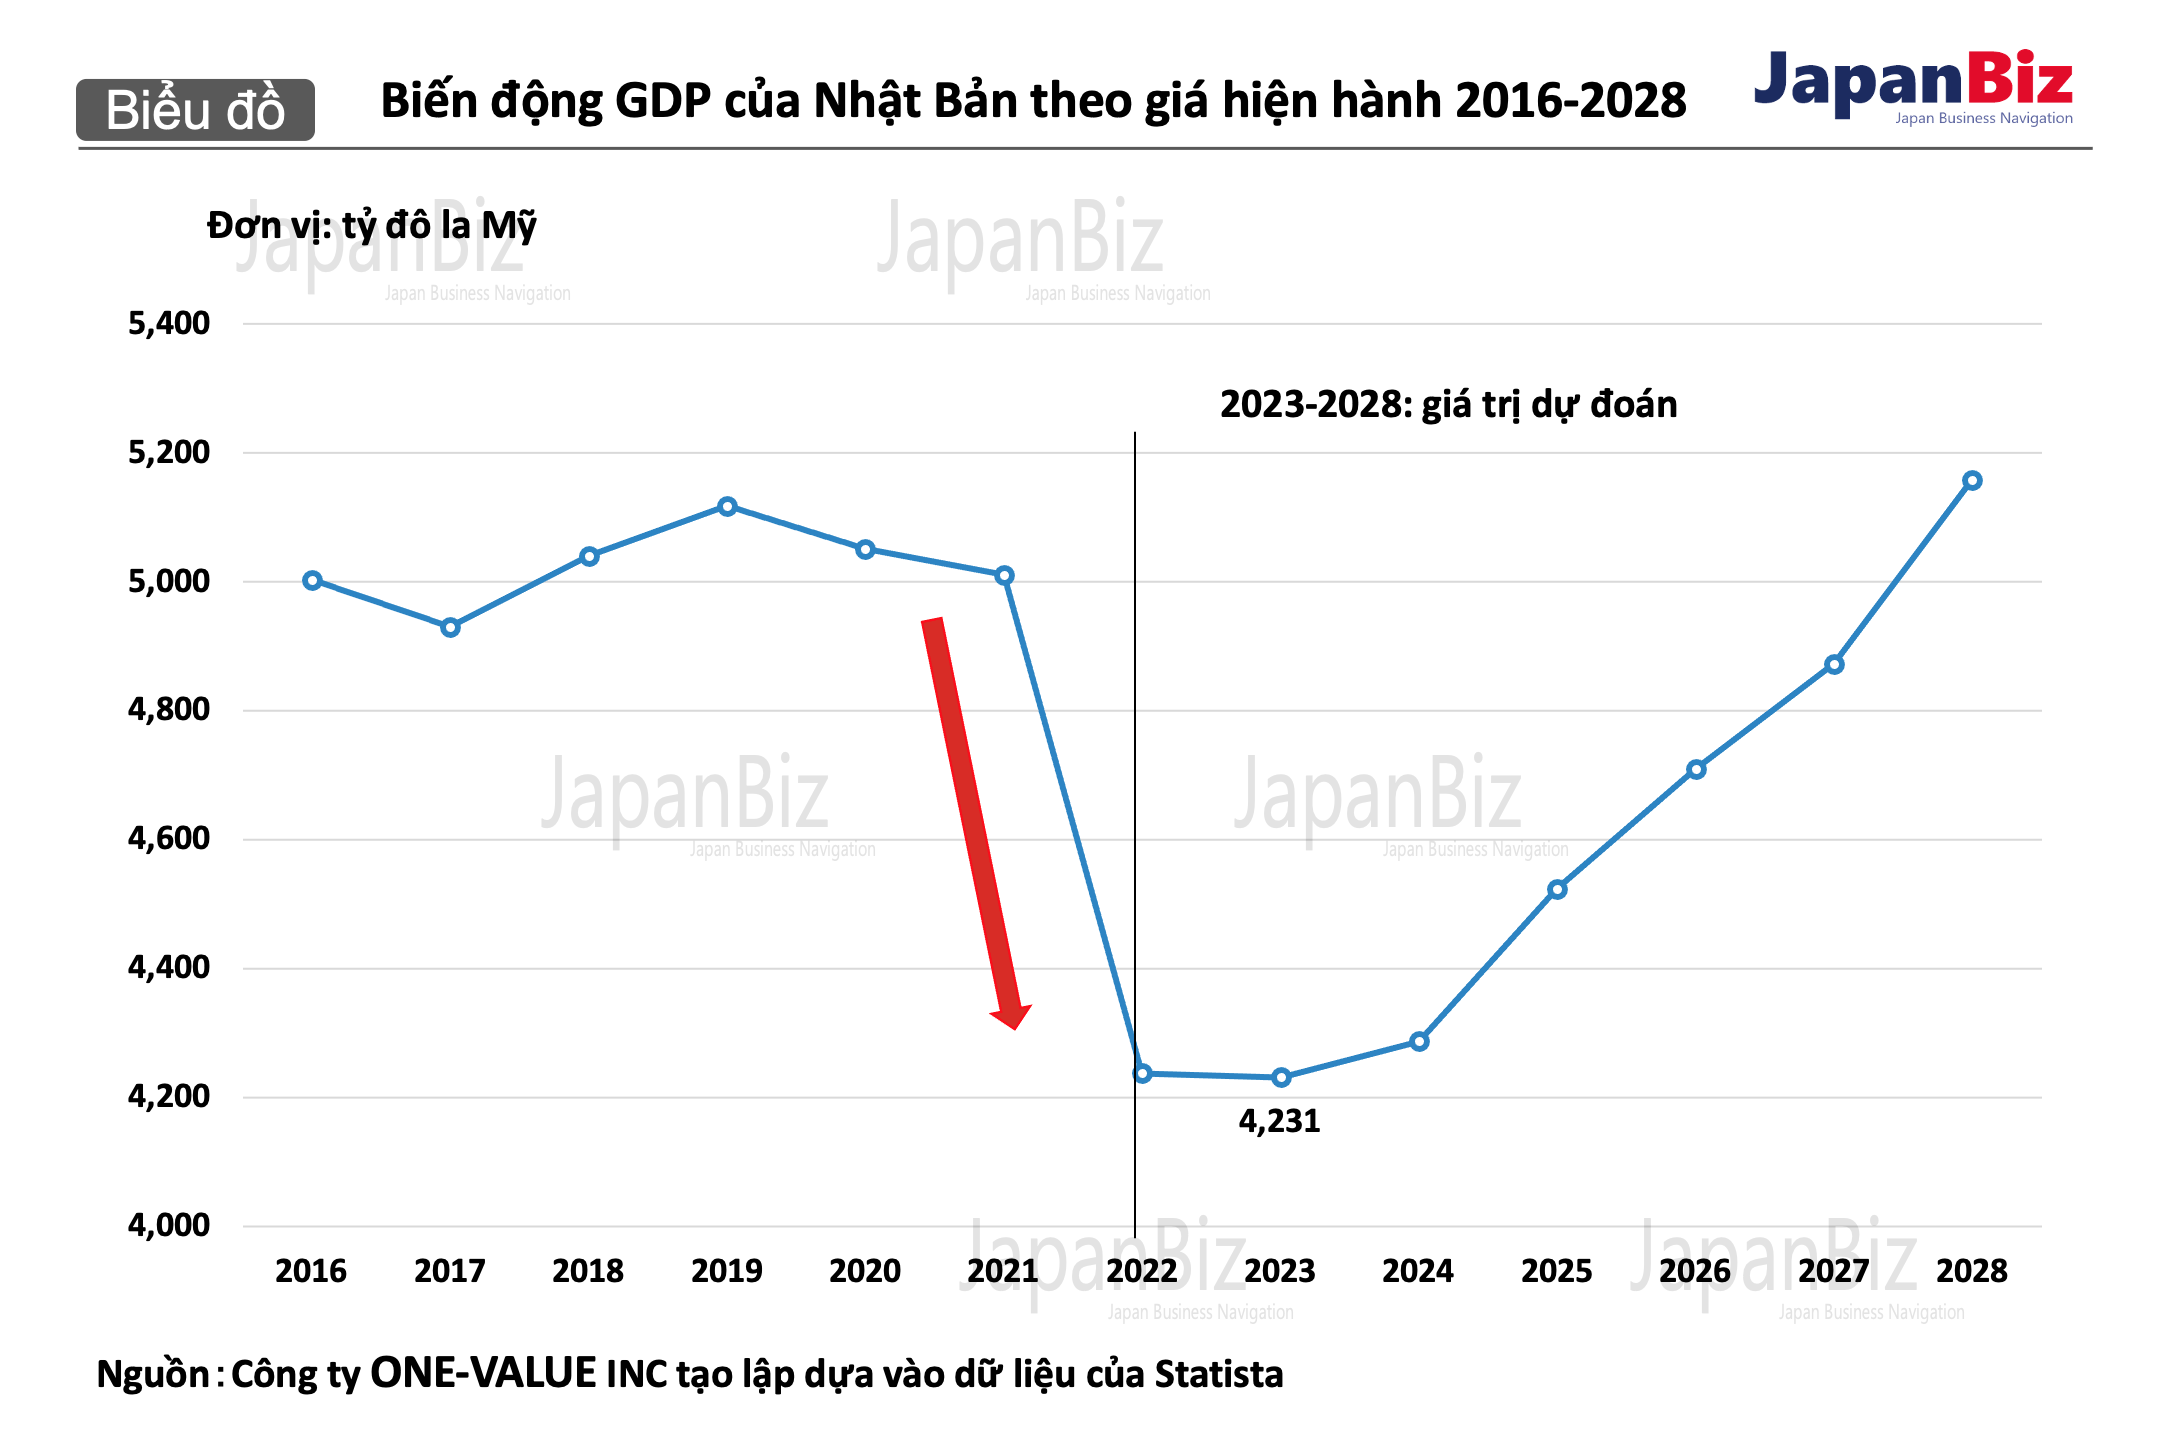 Biến động GDP của Nhật Bản theo giá hiện hành 2016-2028.